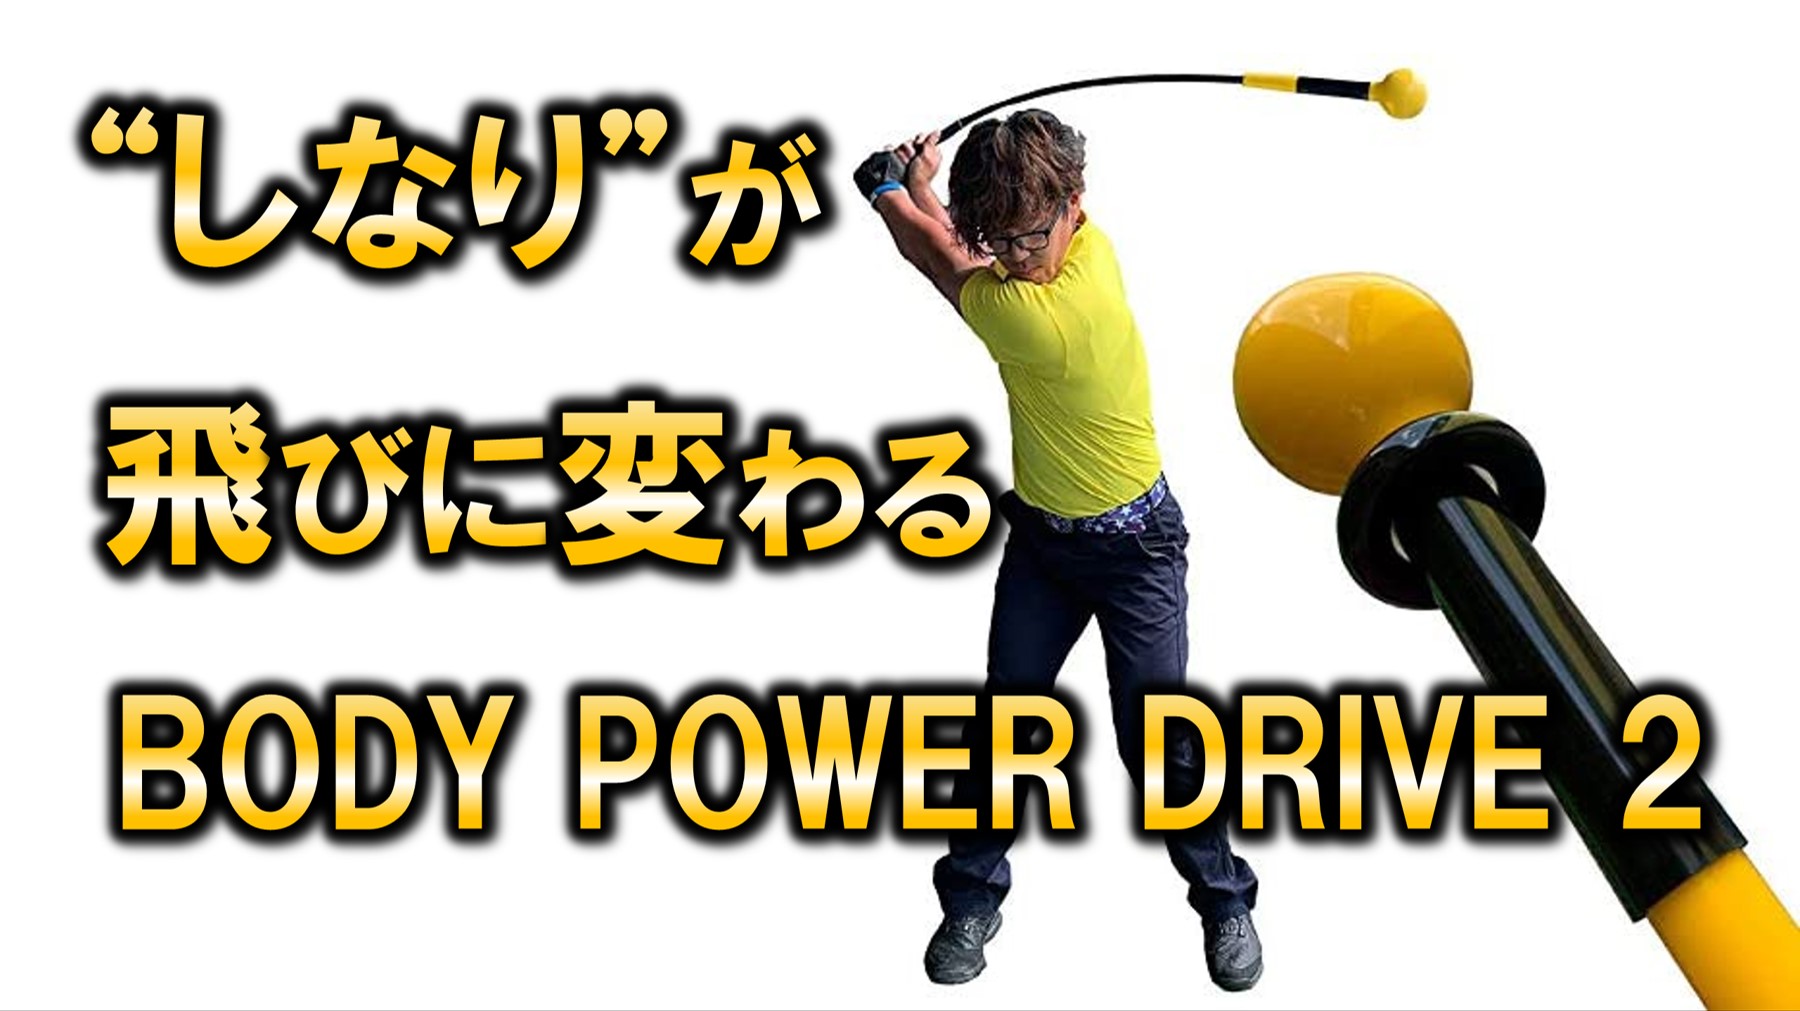 “しなり”が飛びに変わる【BODY POWER DRIVE 2】ゴルフトレーニング器具